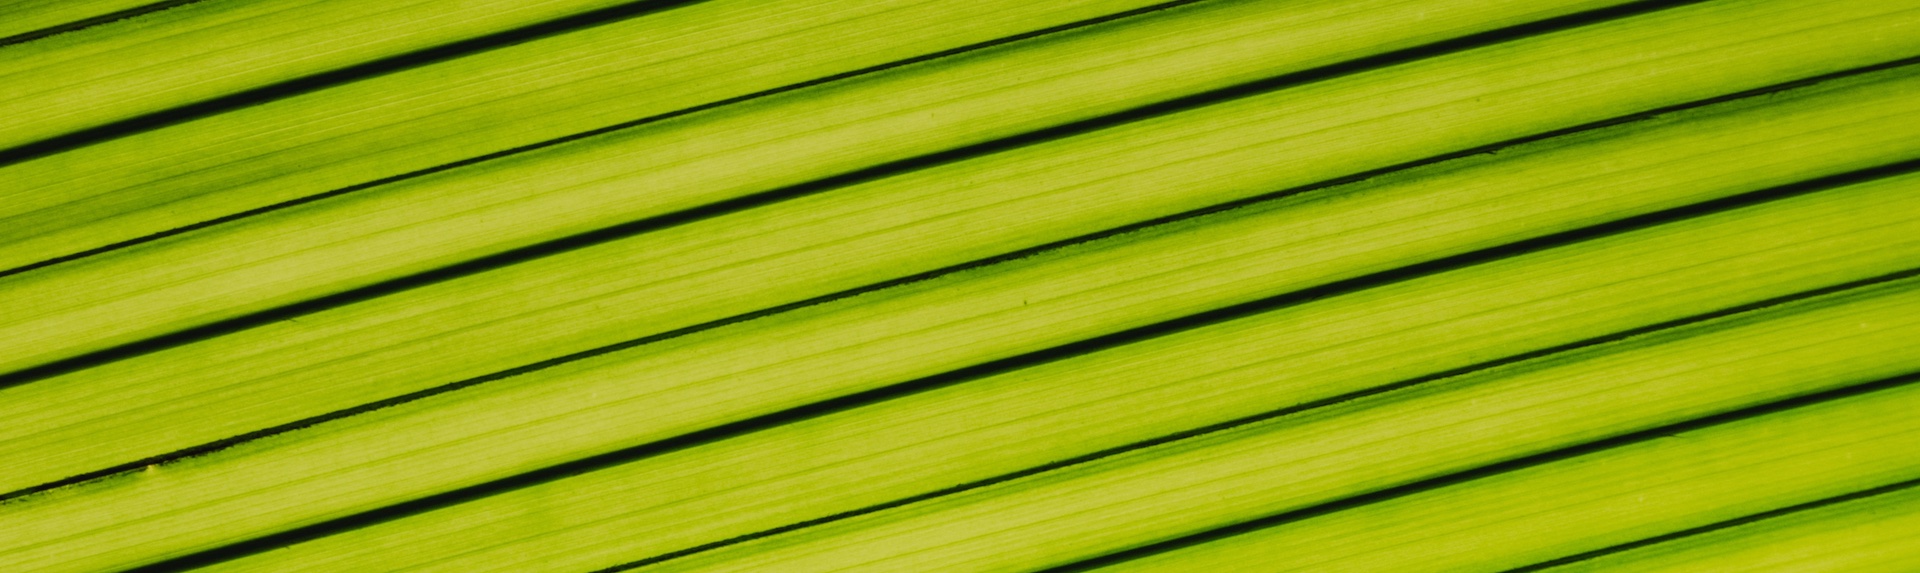 leaf background image